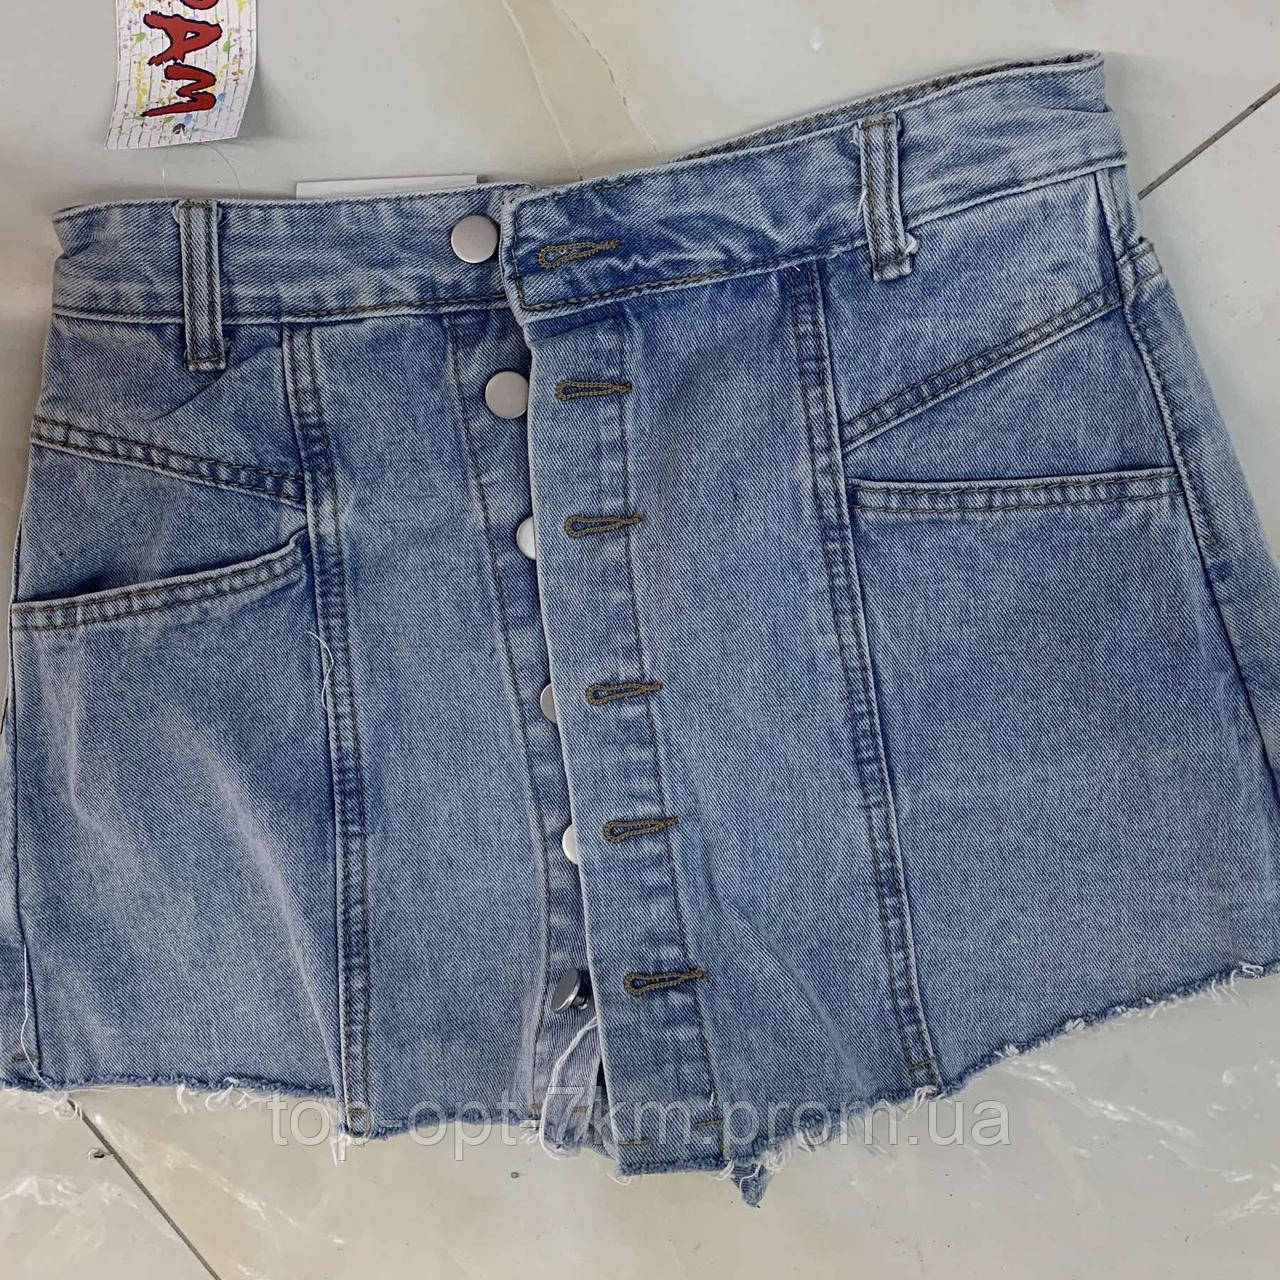 Женские джинсовые шорты-юбка на пуговицах. Женская одежда. s,m,l,xl